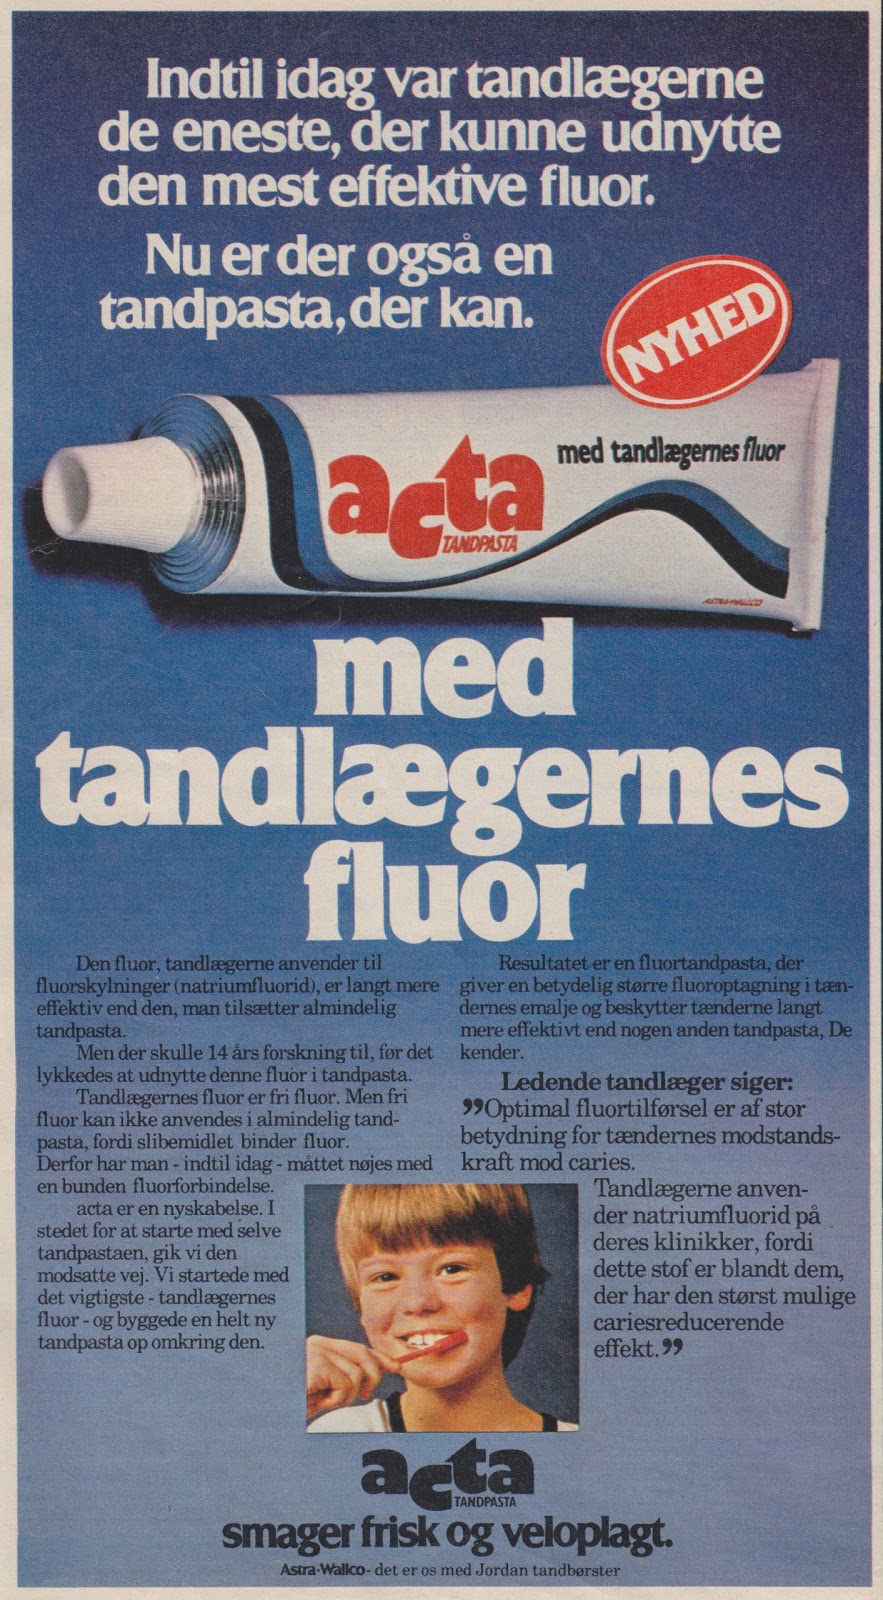 Tilbage Datiden - gamle danske reklamer og andet godt: Acta tandpasta